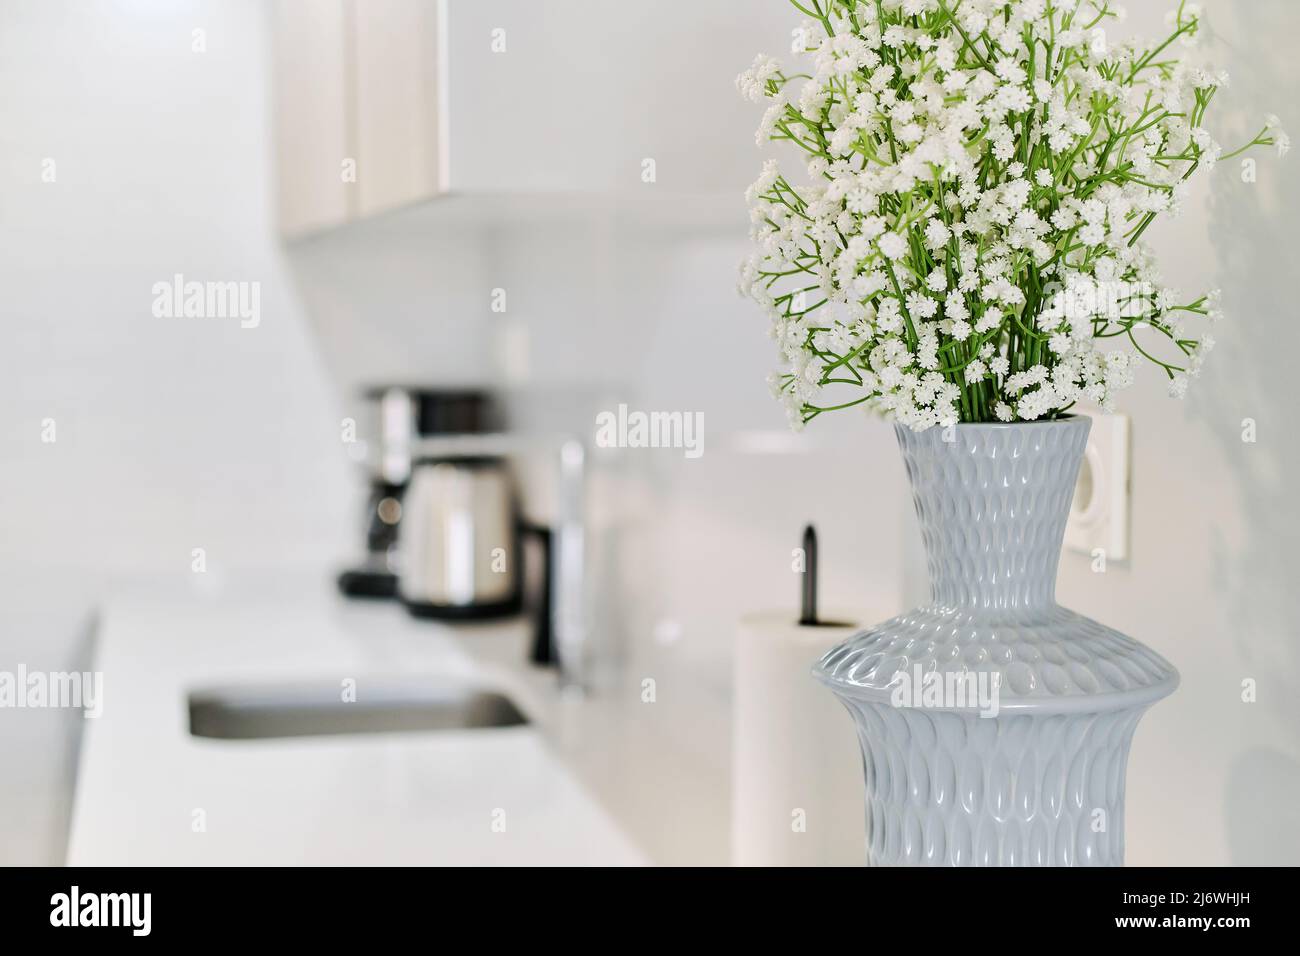 Nahaufnahme von niedlichen kleinen weißen Gypsophila-Blumen in grauer stilvoller Vase auf der Küchentheke, keine Menschen. Moderner Wohnzimmerhintergrund Stockfoto